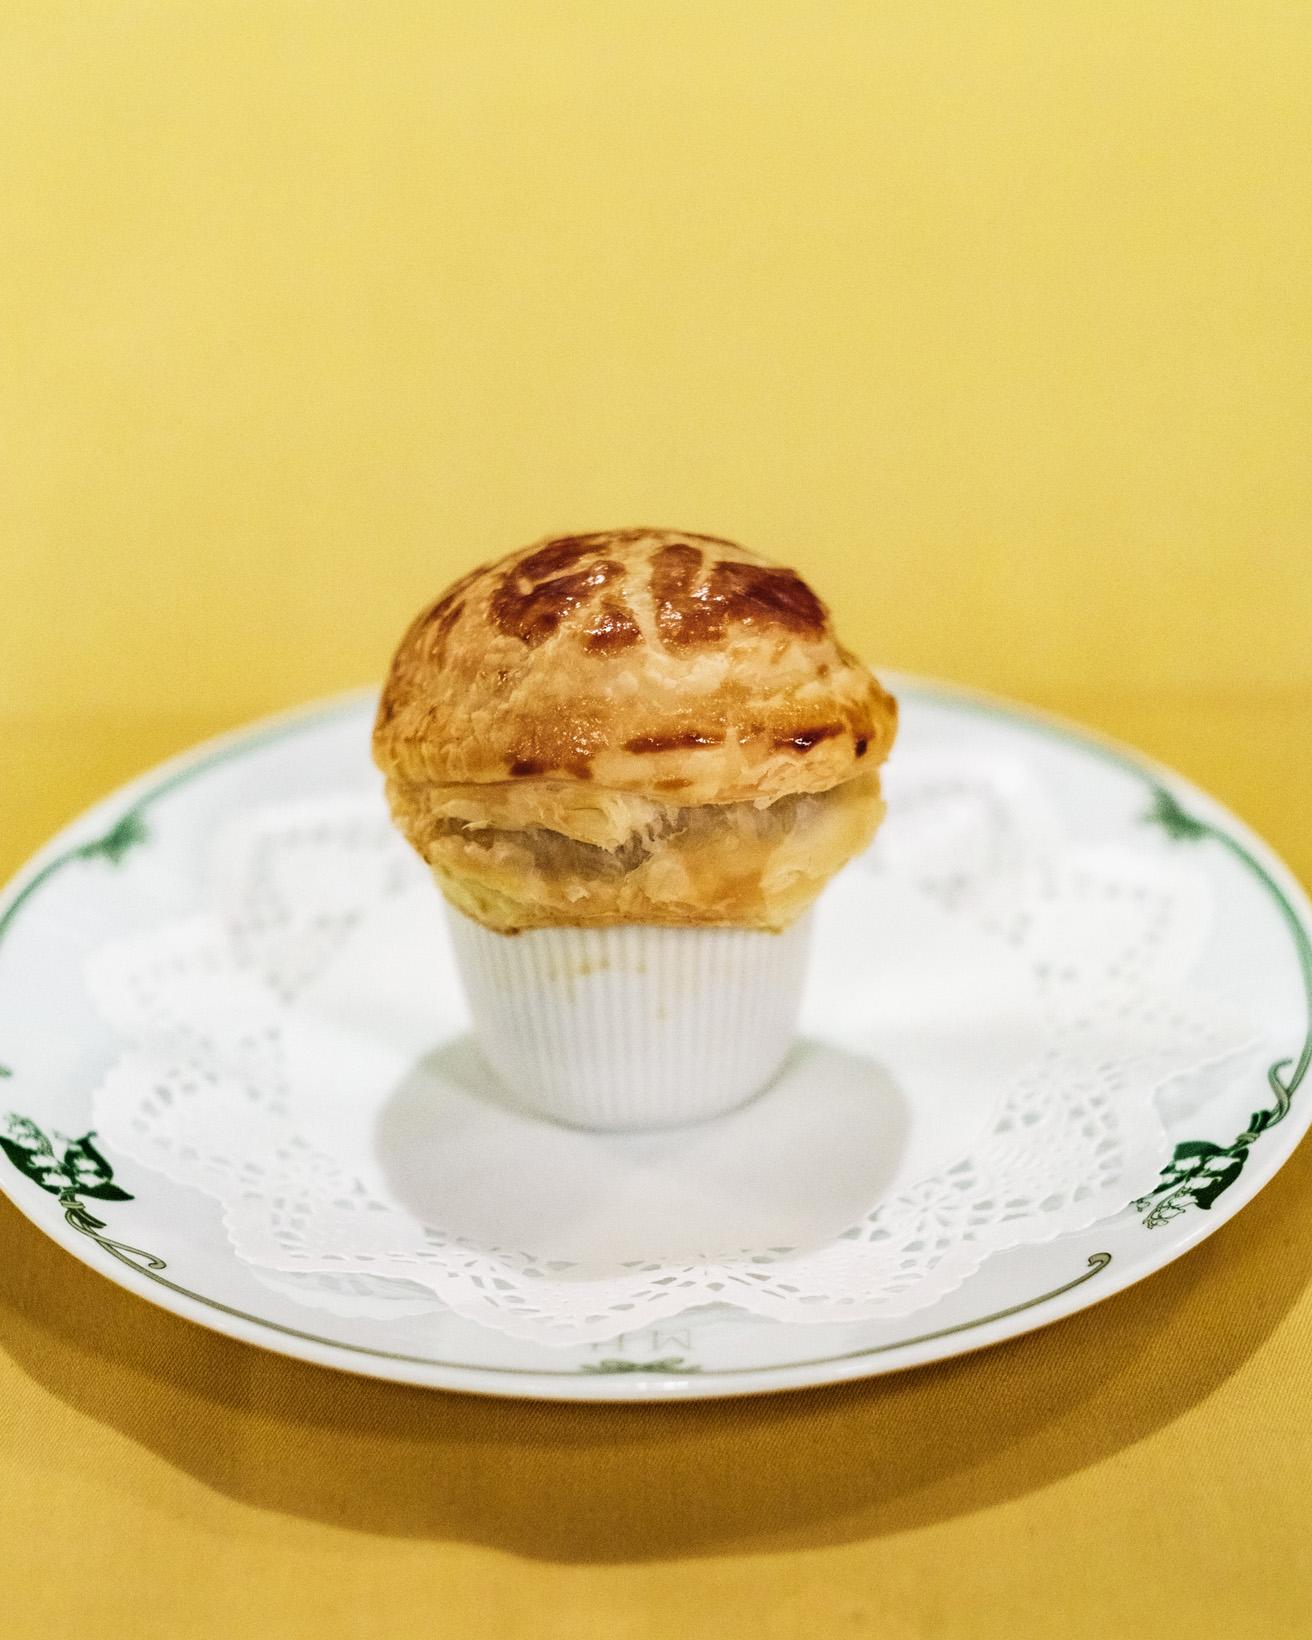 「ザ・クラシックディナー」のコース料理のひとつ。「フランス産エスカルゴときのこのフリカッセ パイ包み焼き」。歴代のオリジナル食器には、「幸せのおとずれ」という花言葉のすずらんが描かれてきた。